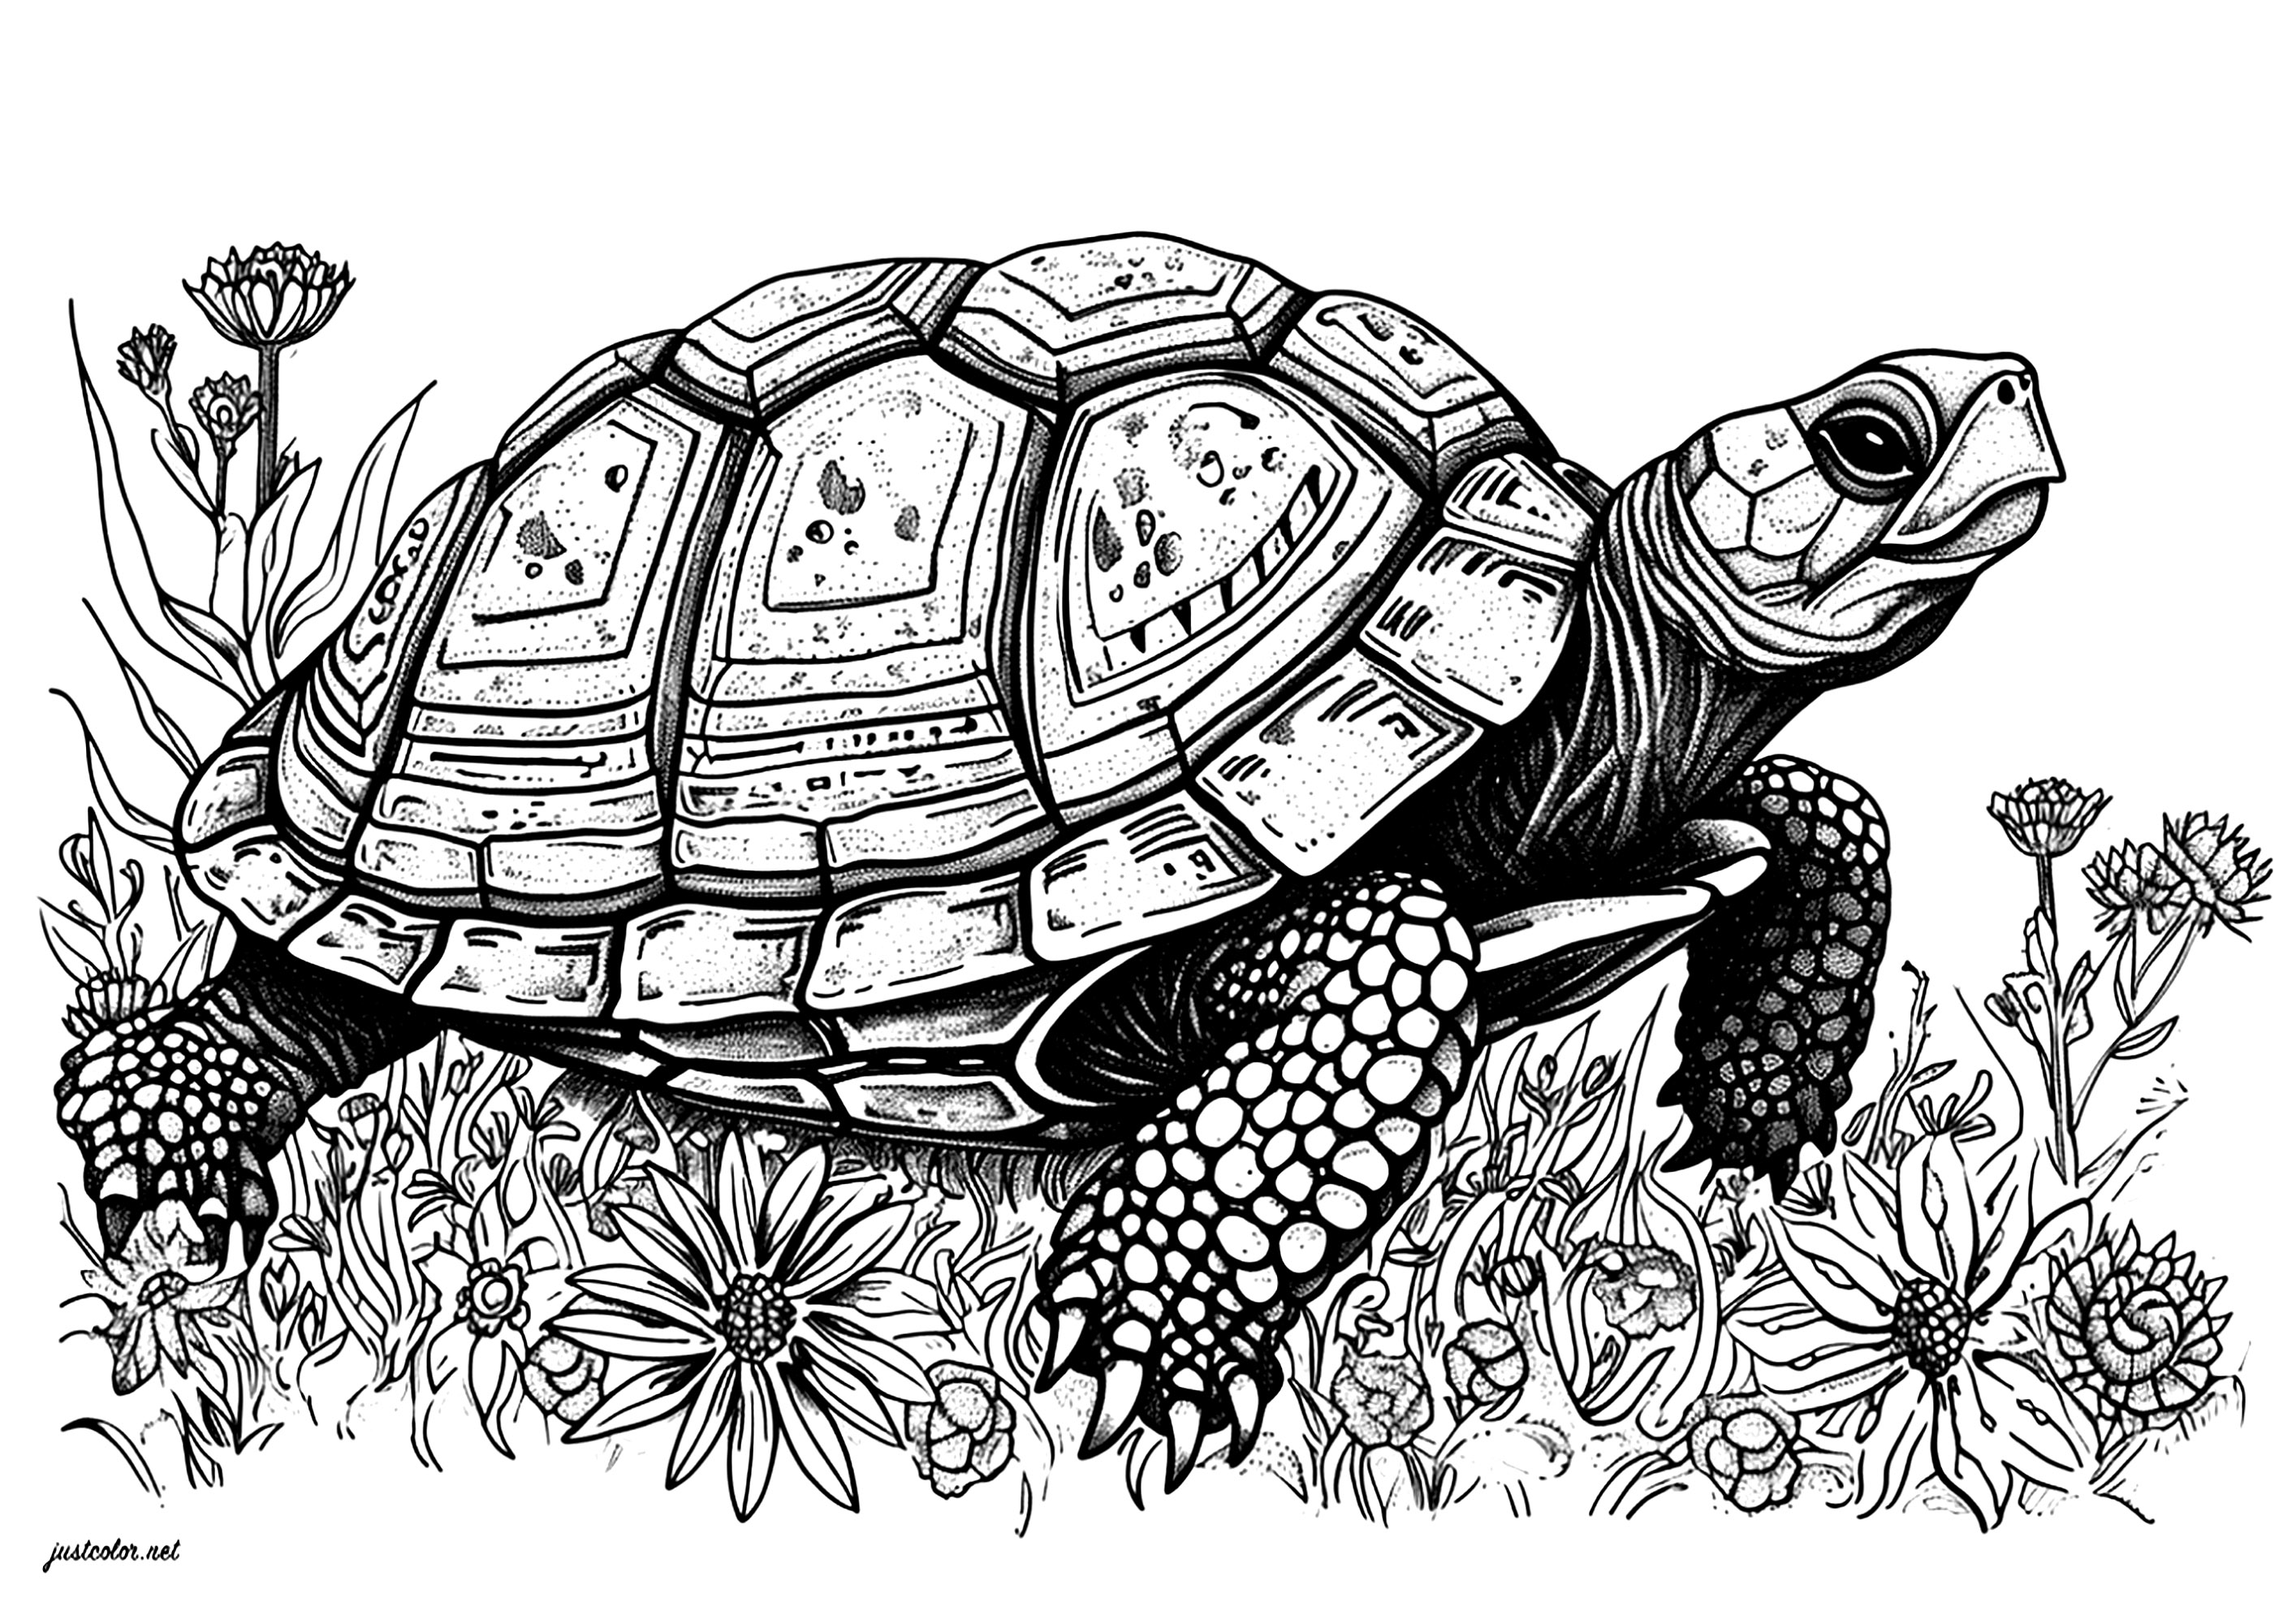 Uma bela tartaruga a mover-se lentamente por entre bonitas flores